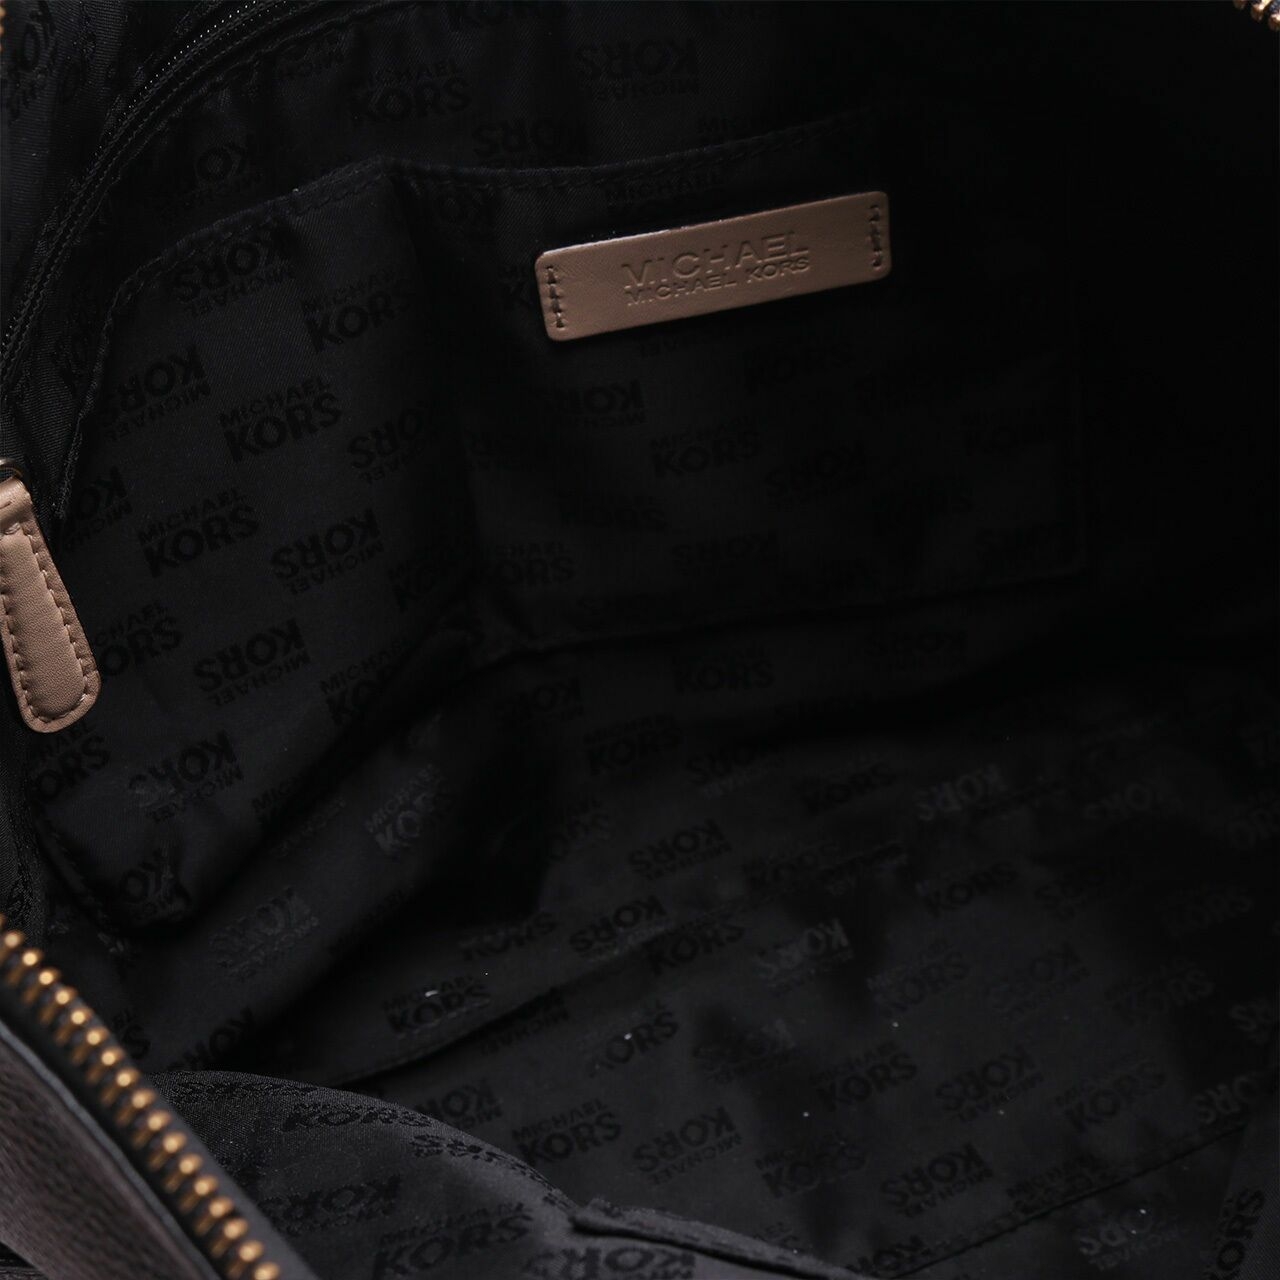 Michael Kors Black Jet Set Pebble Embossed Leather Tote Bag